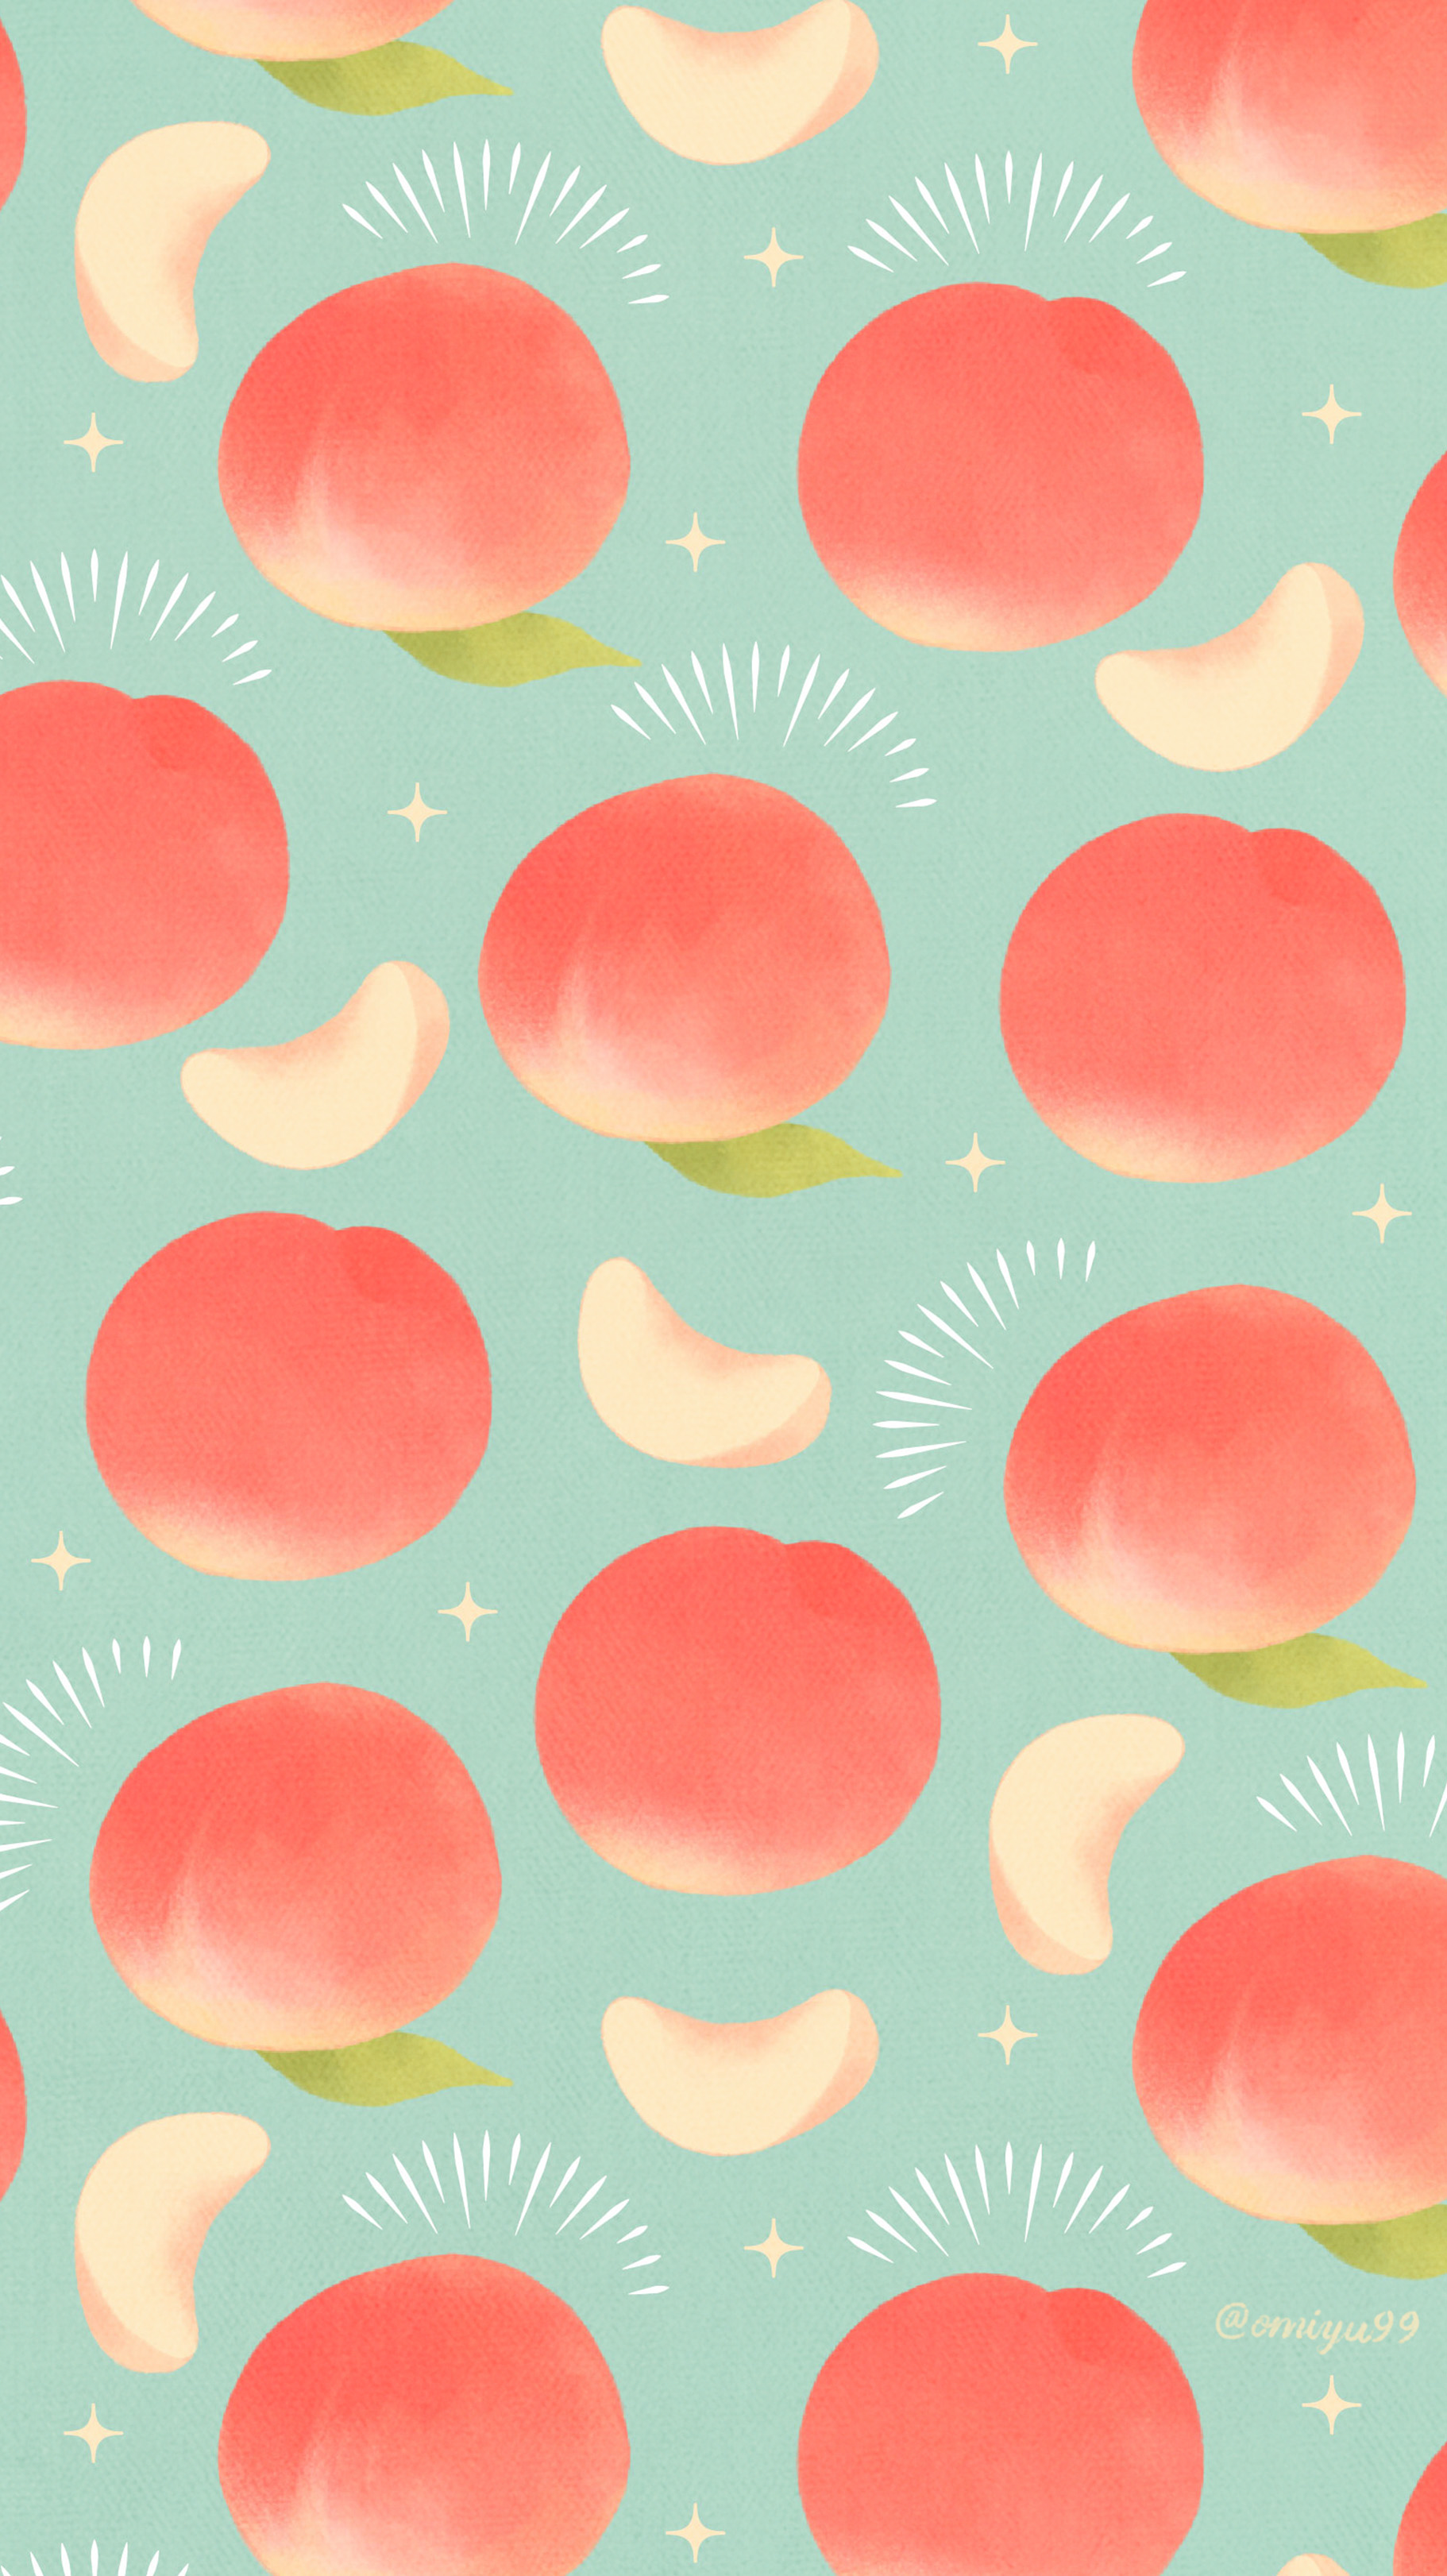 تويتر Omiyu お返事遅くなります على تويتر ピーチな壁紙 Illust Illustration 壁紙 イラスト Iphone壁紙 桃 Peach 食べ物 T Co 44dcpbdzve